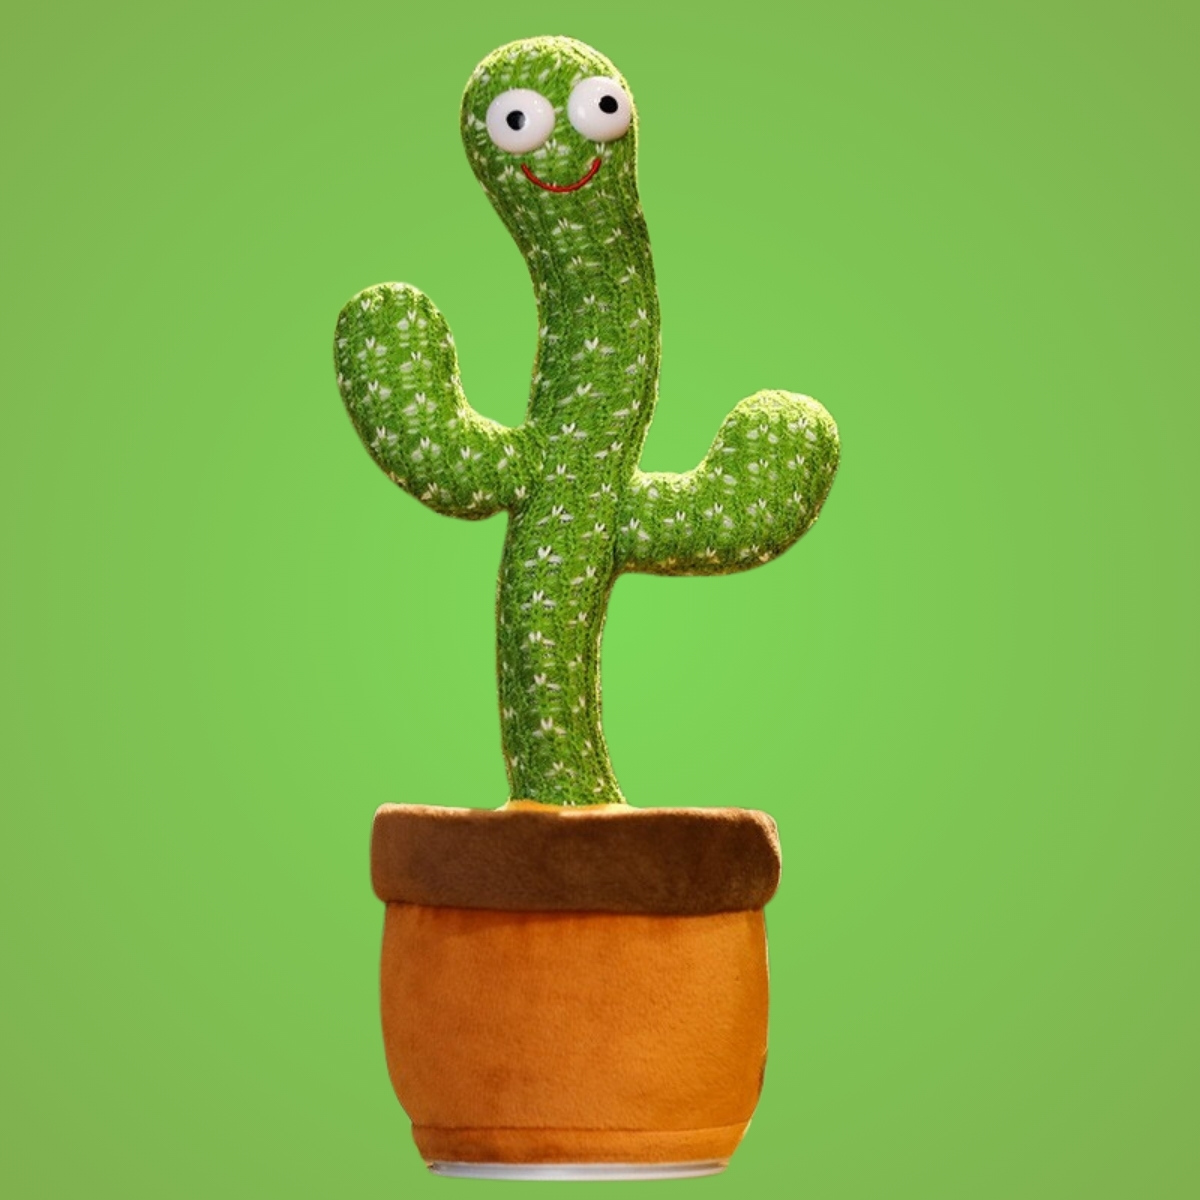 Tanzender Kaktus Spielzeug - Tanzender Kaktus Shop